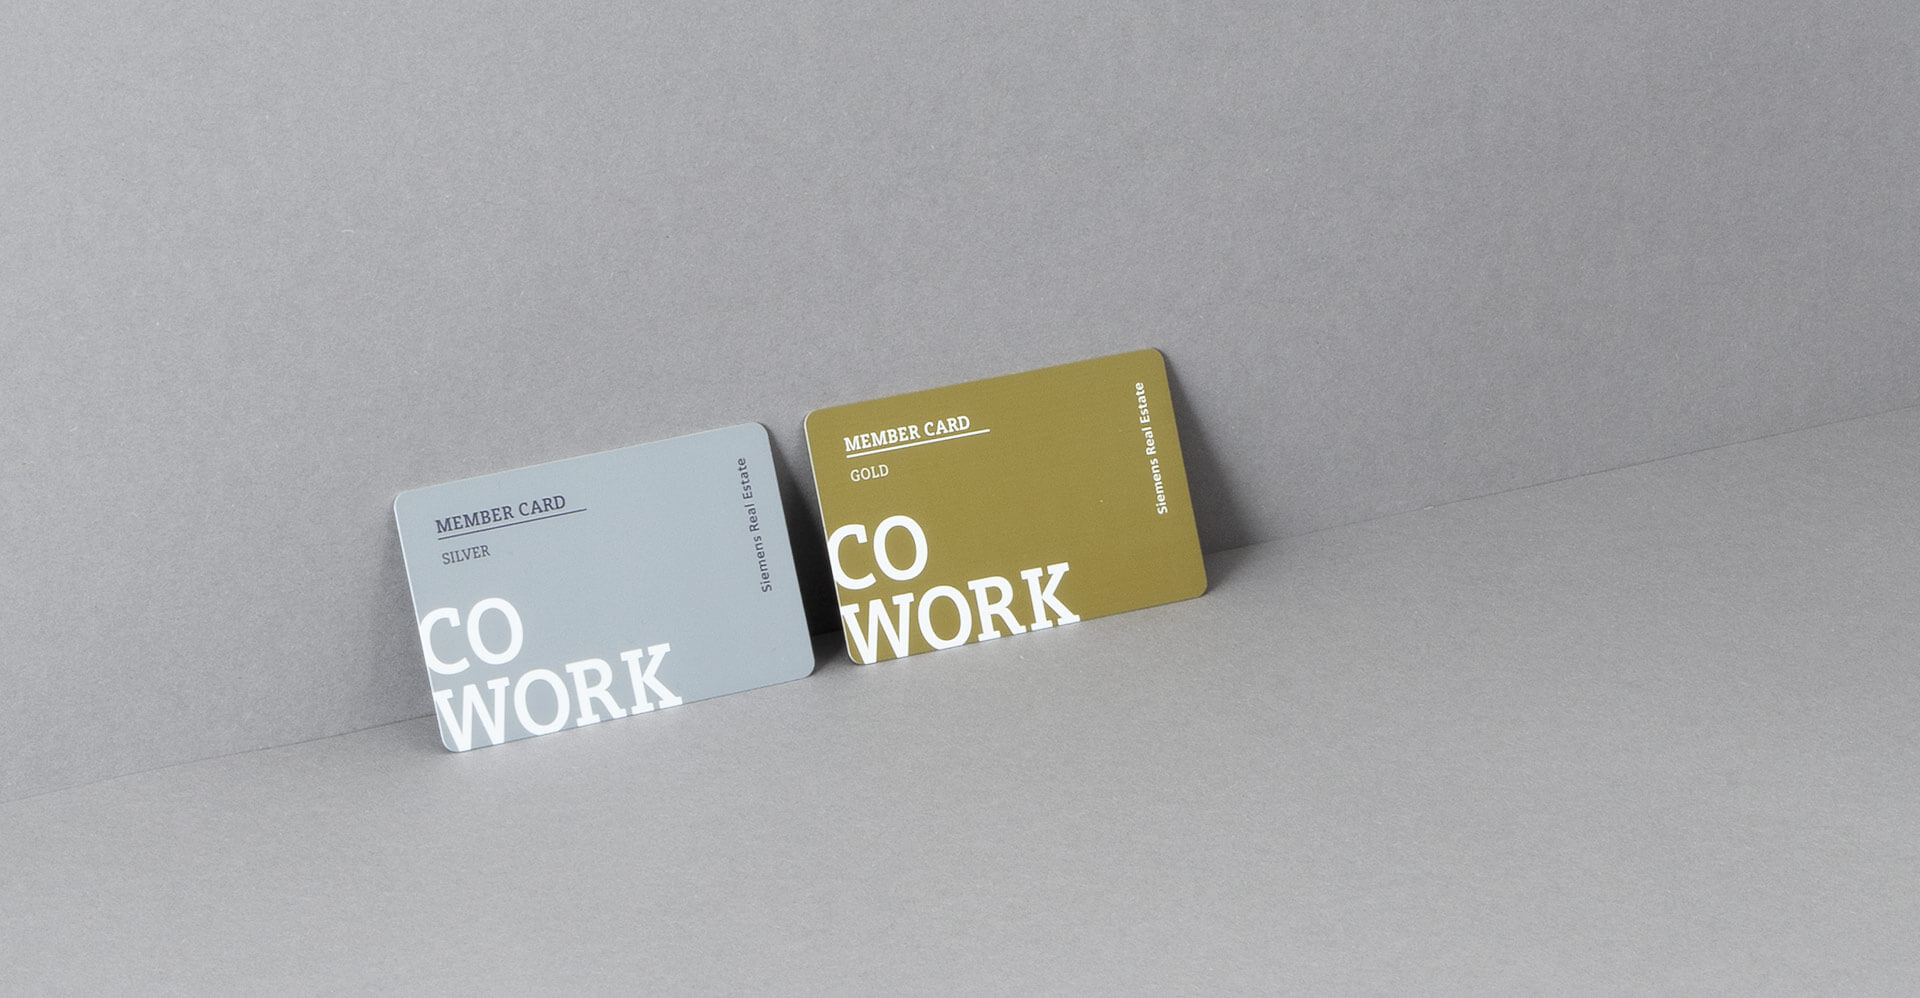 Silberne und goldene Member Card von Siemens Coworking Space auf grauem Untergrund